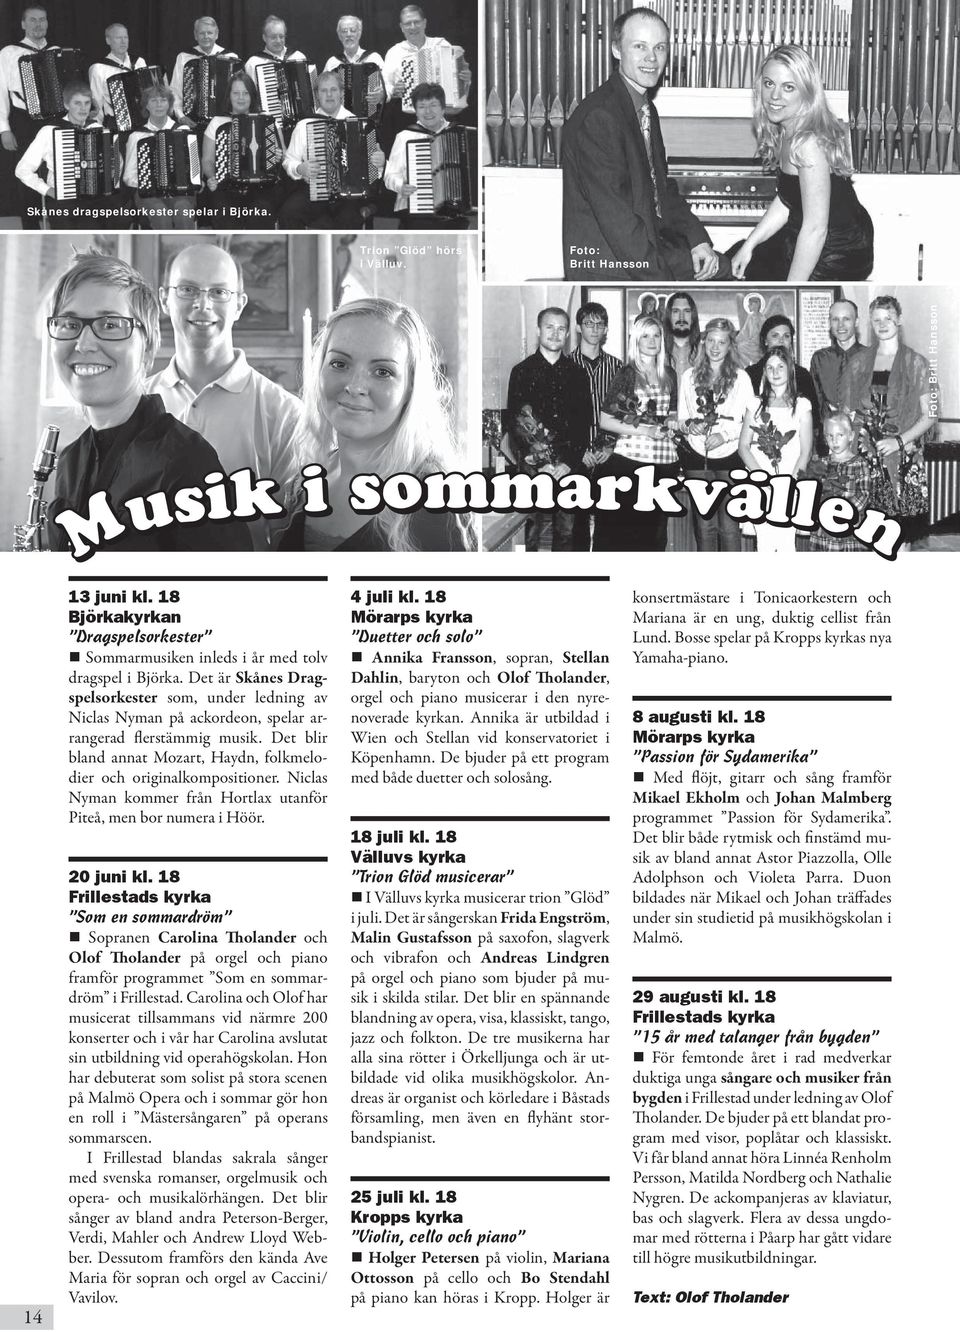 Det är Skånes Dragspelsorkester som, under ledning av Niclas Nyman på ackordeon, spelar arrangerad flerstämmig musik. Det blir bland annat Mozart, Haydn, folkmelodier och originalkompositioner.